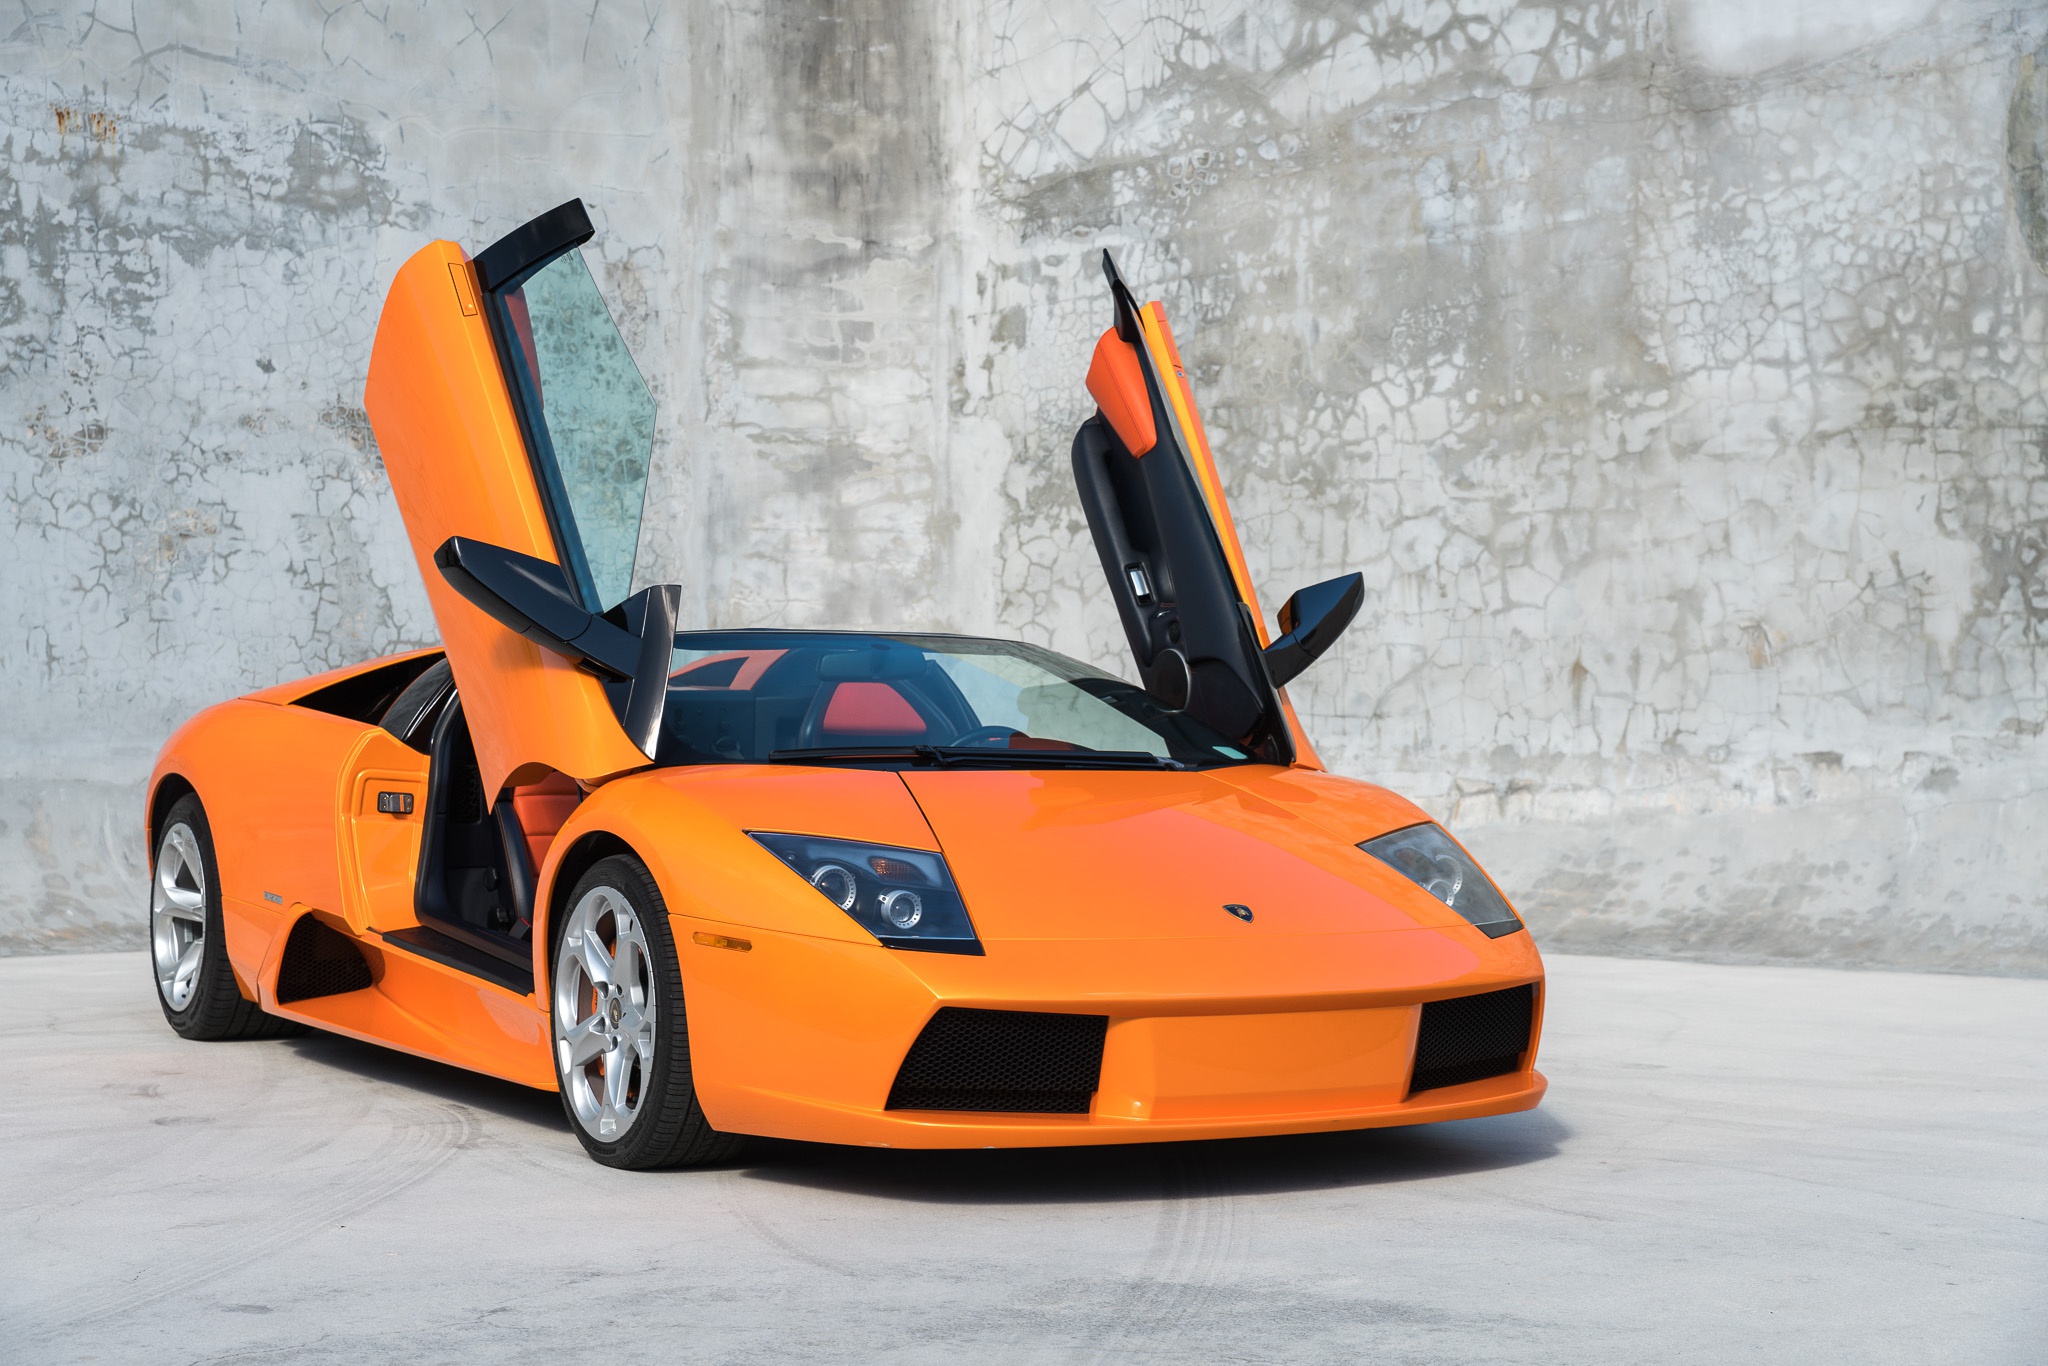 Lamborghini Murcielago Orange